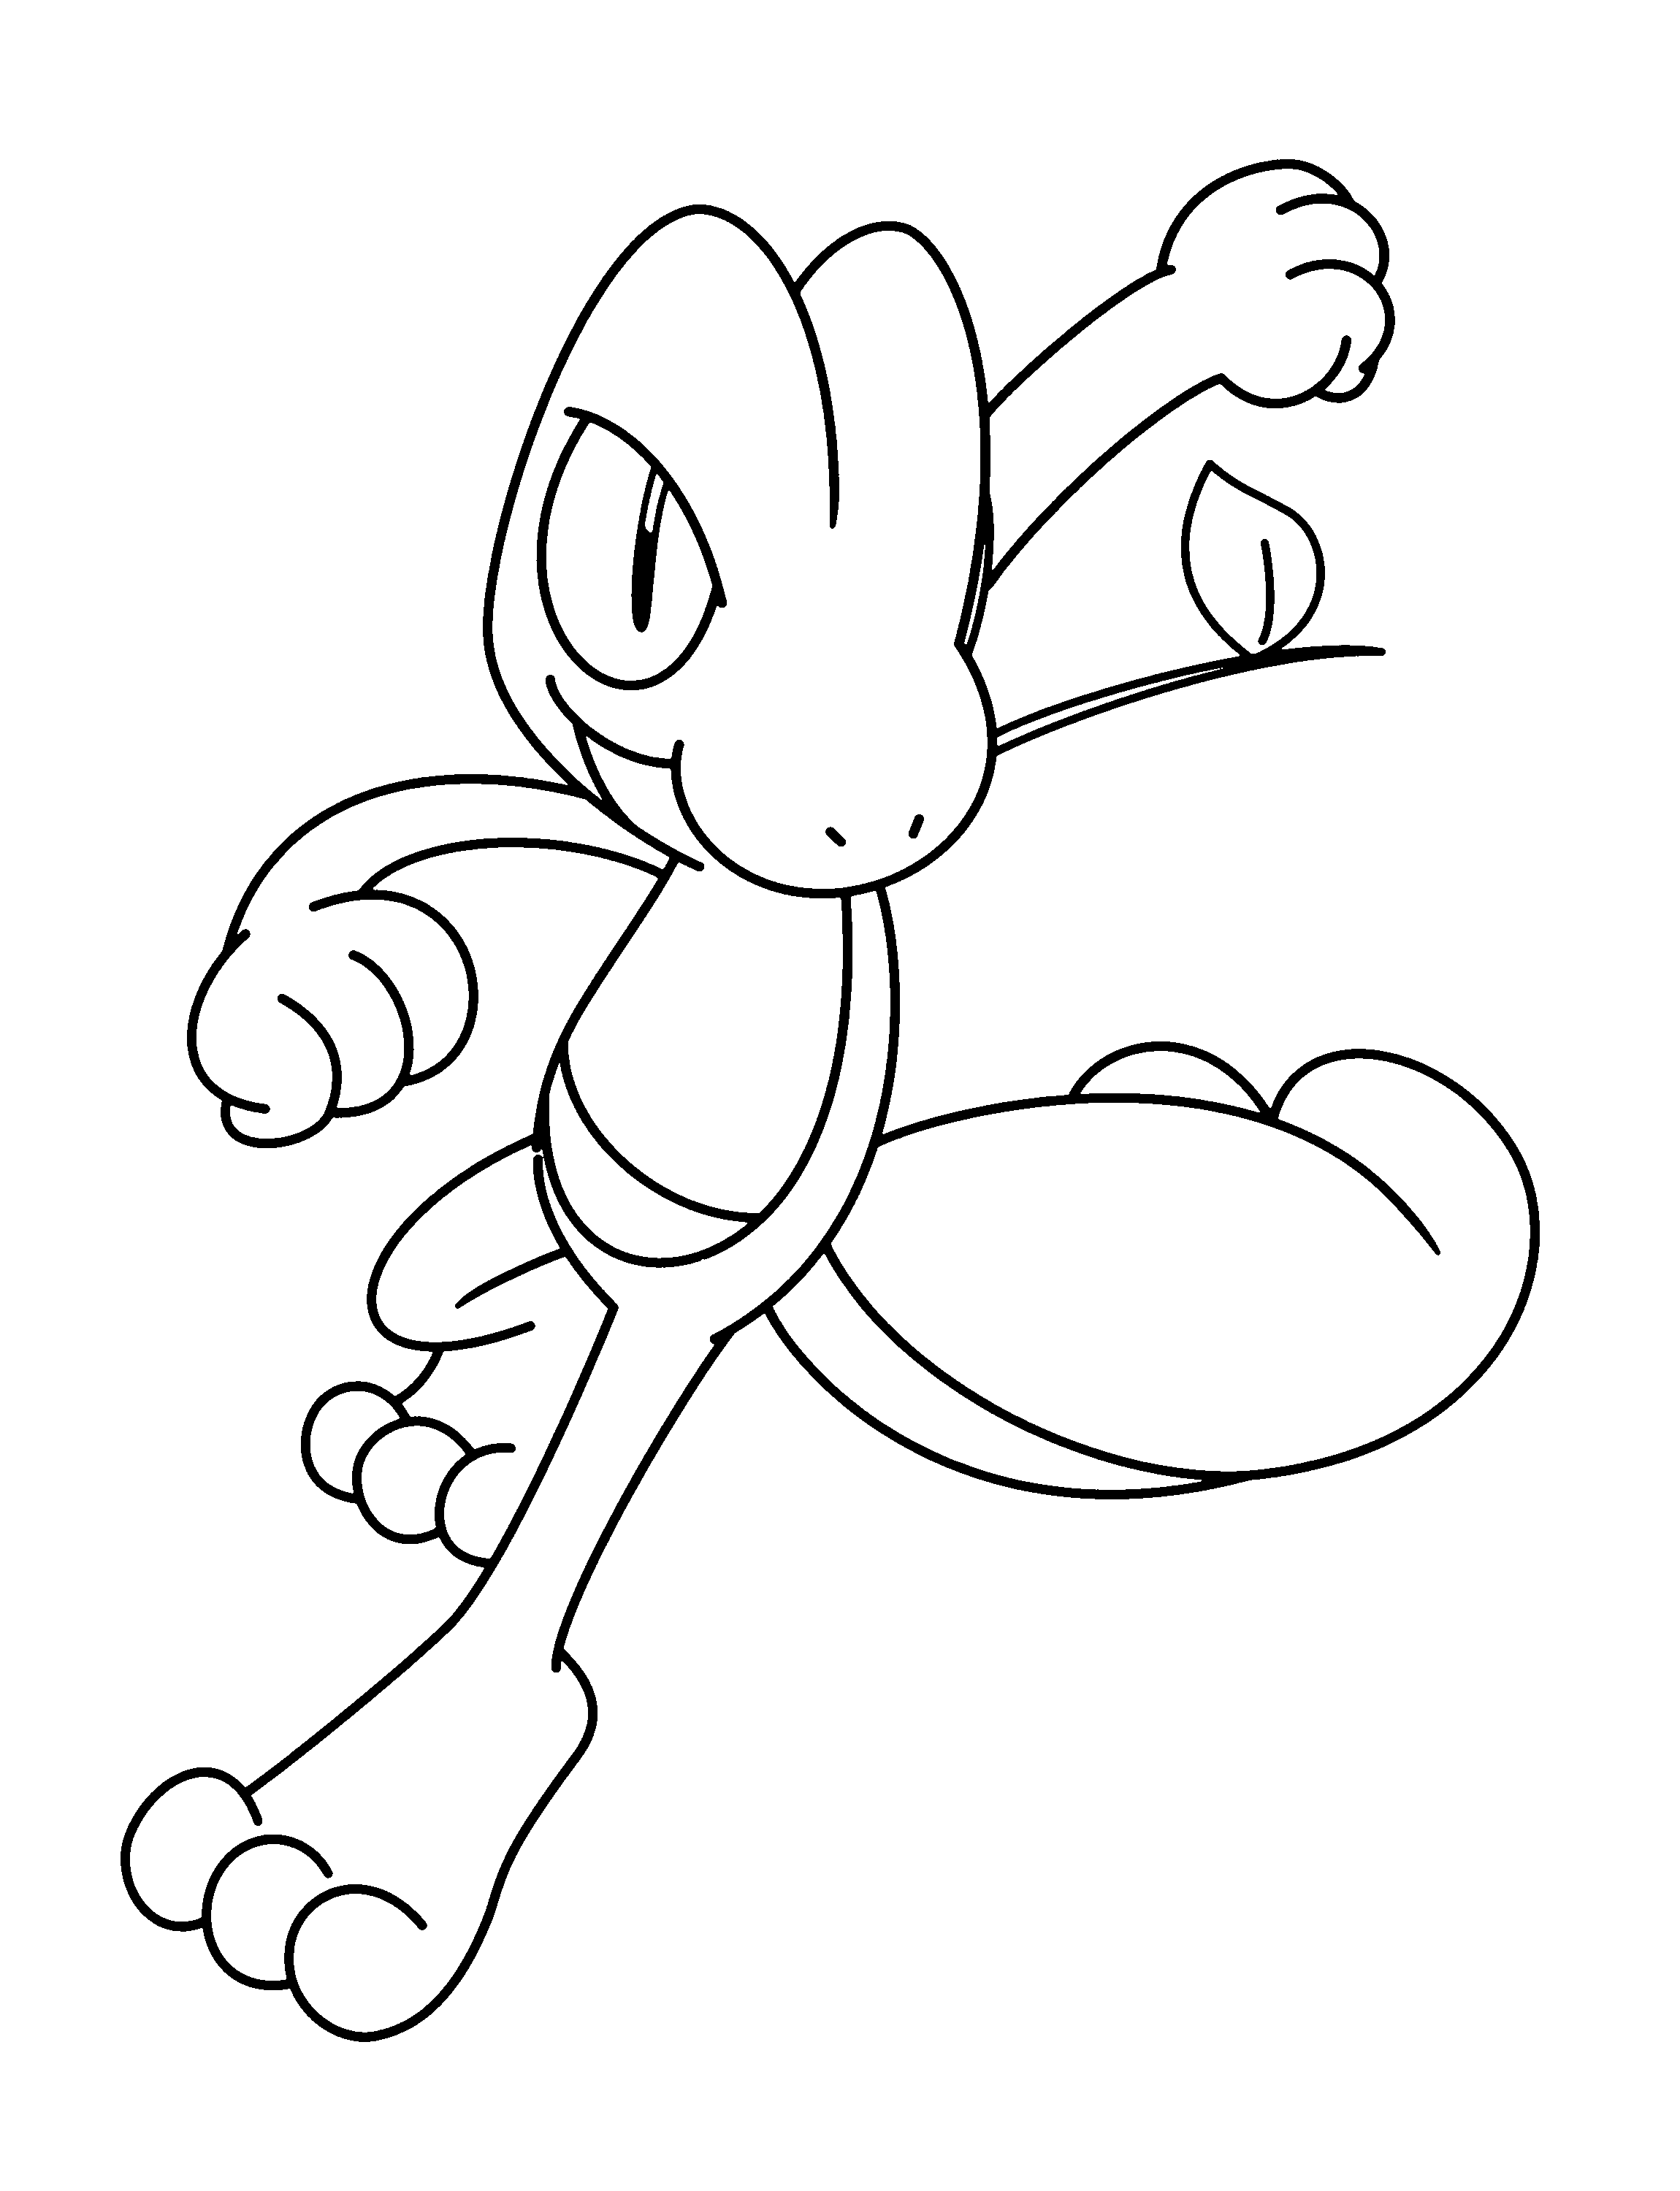 dibujo-para-colorear-pokemon-imagen-animada-0874